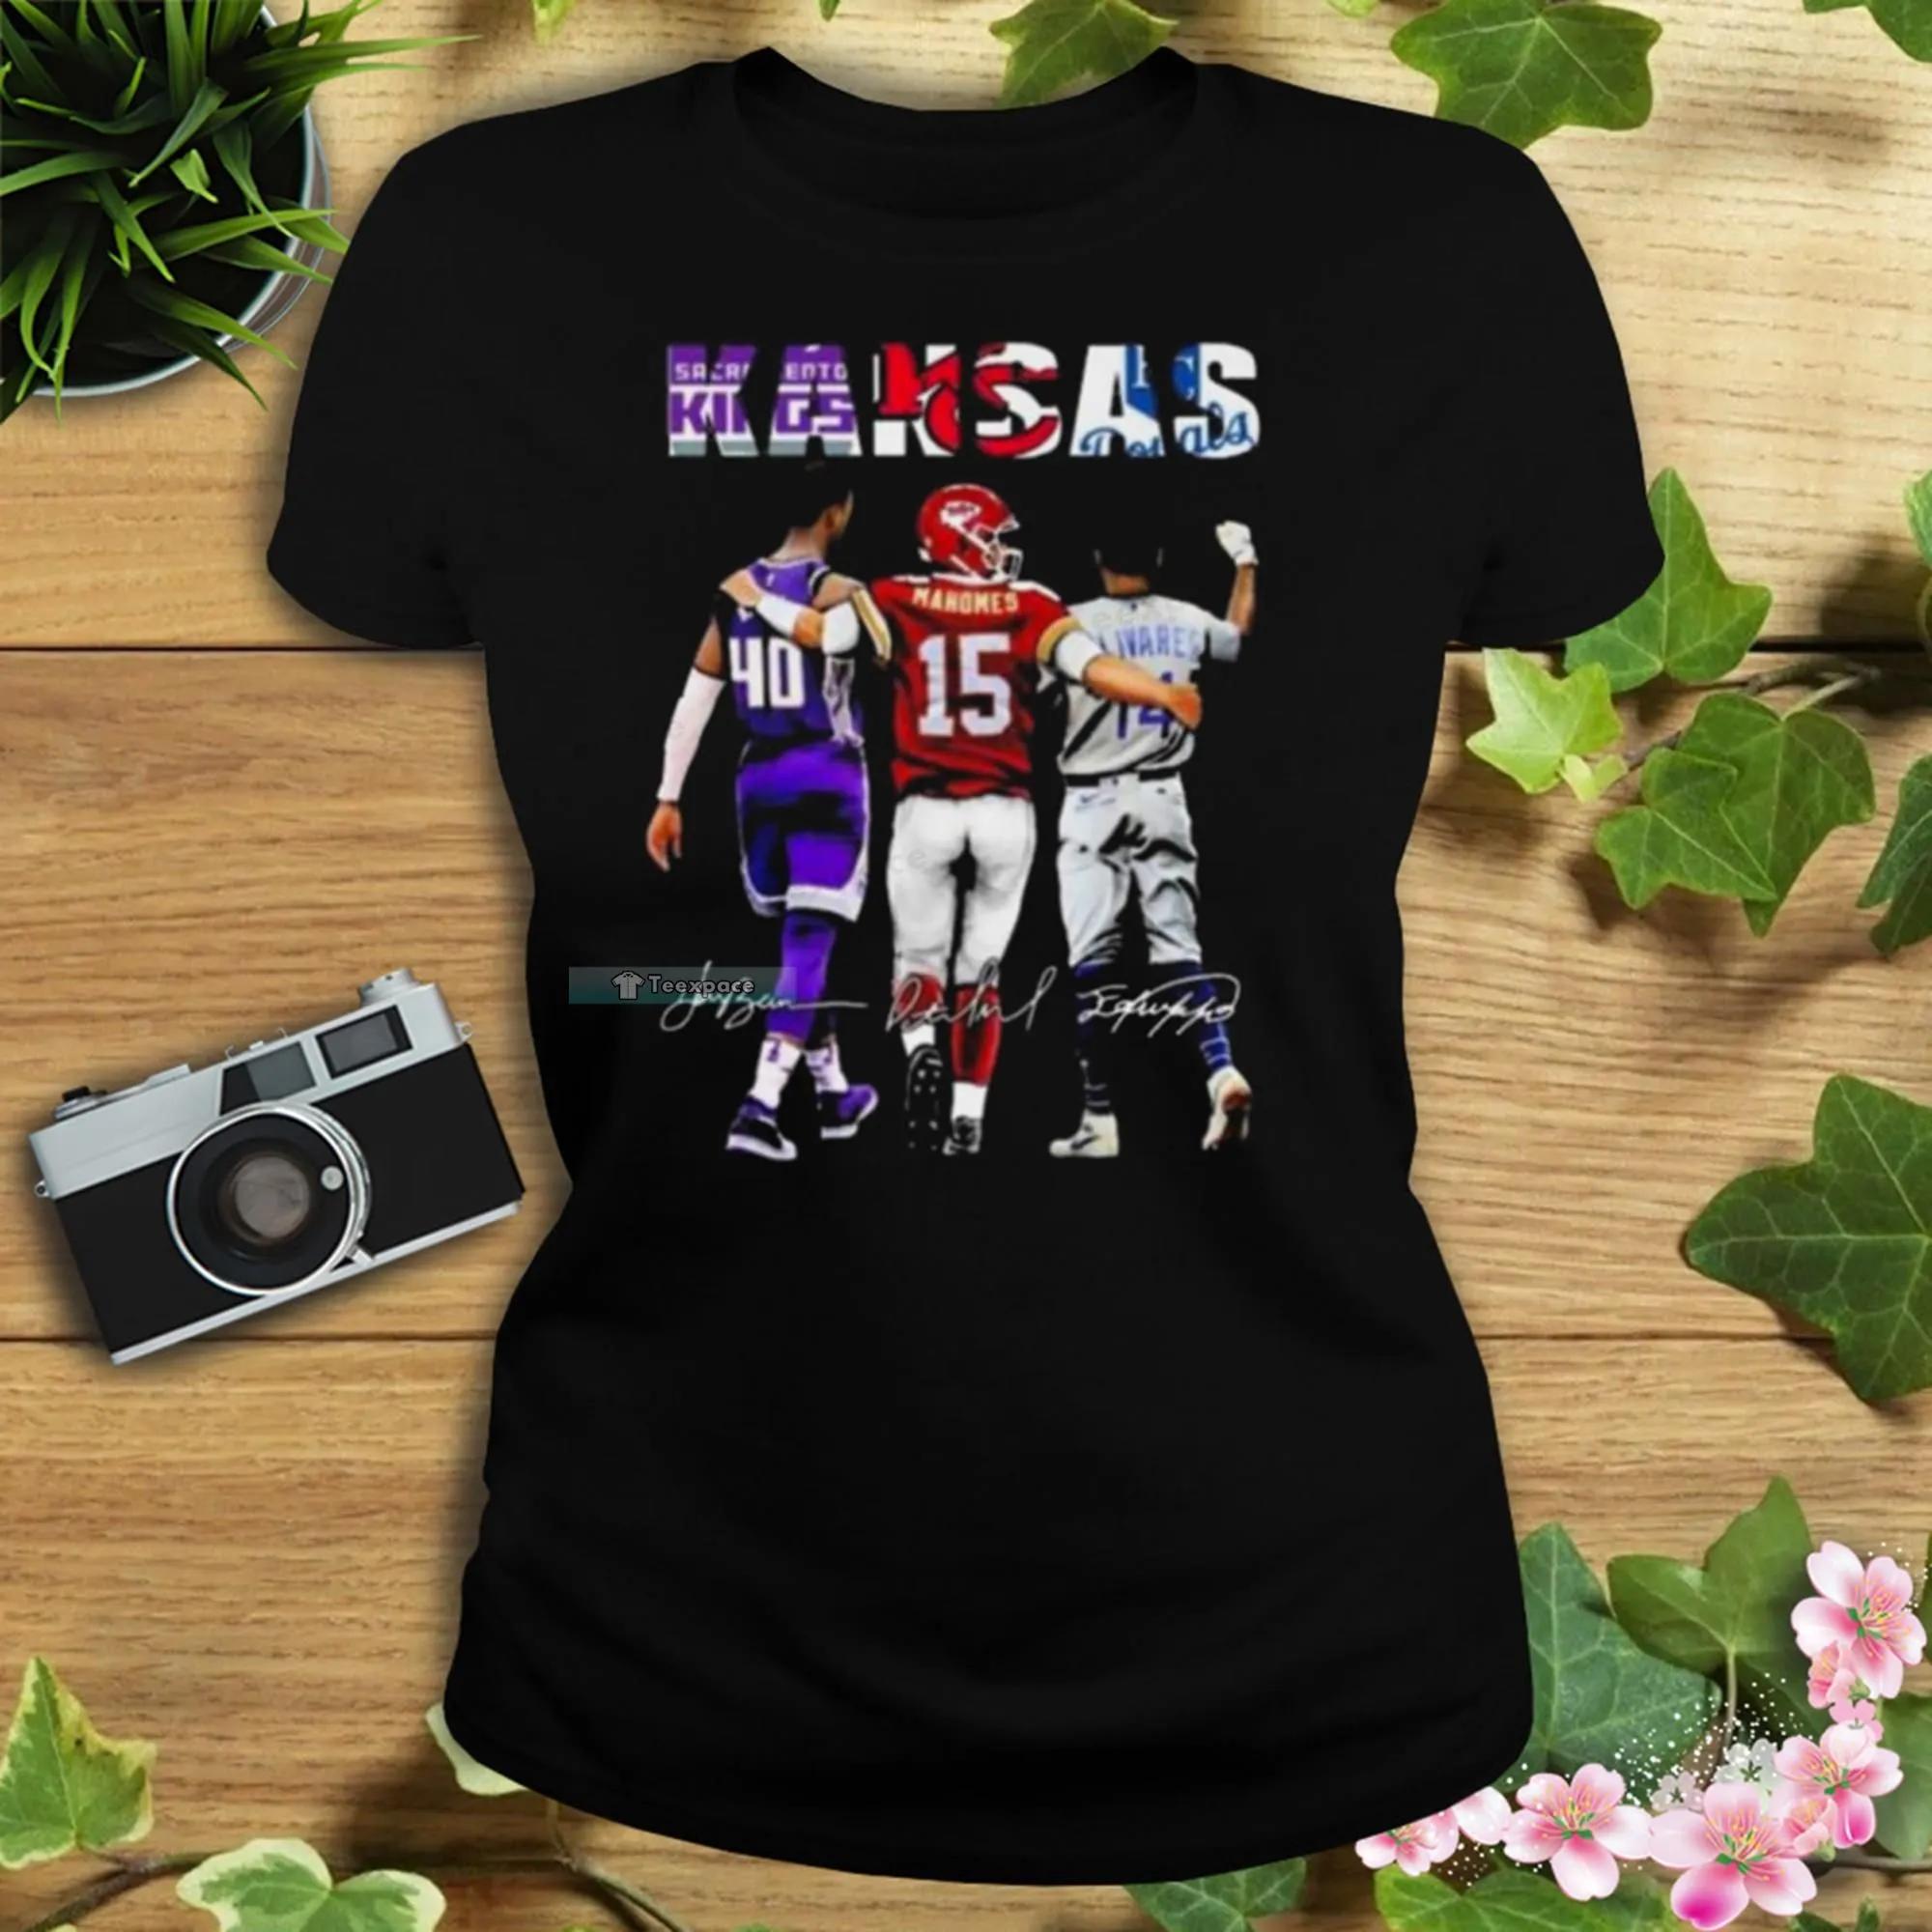 Mahomes Royals shirt  Royals shirts, Shirts, Kansas city royals